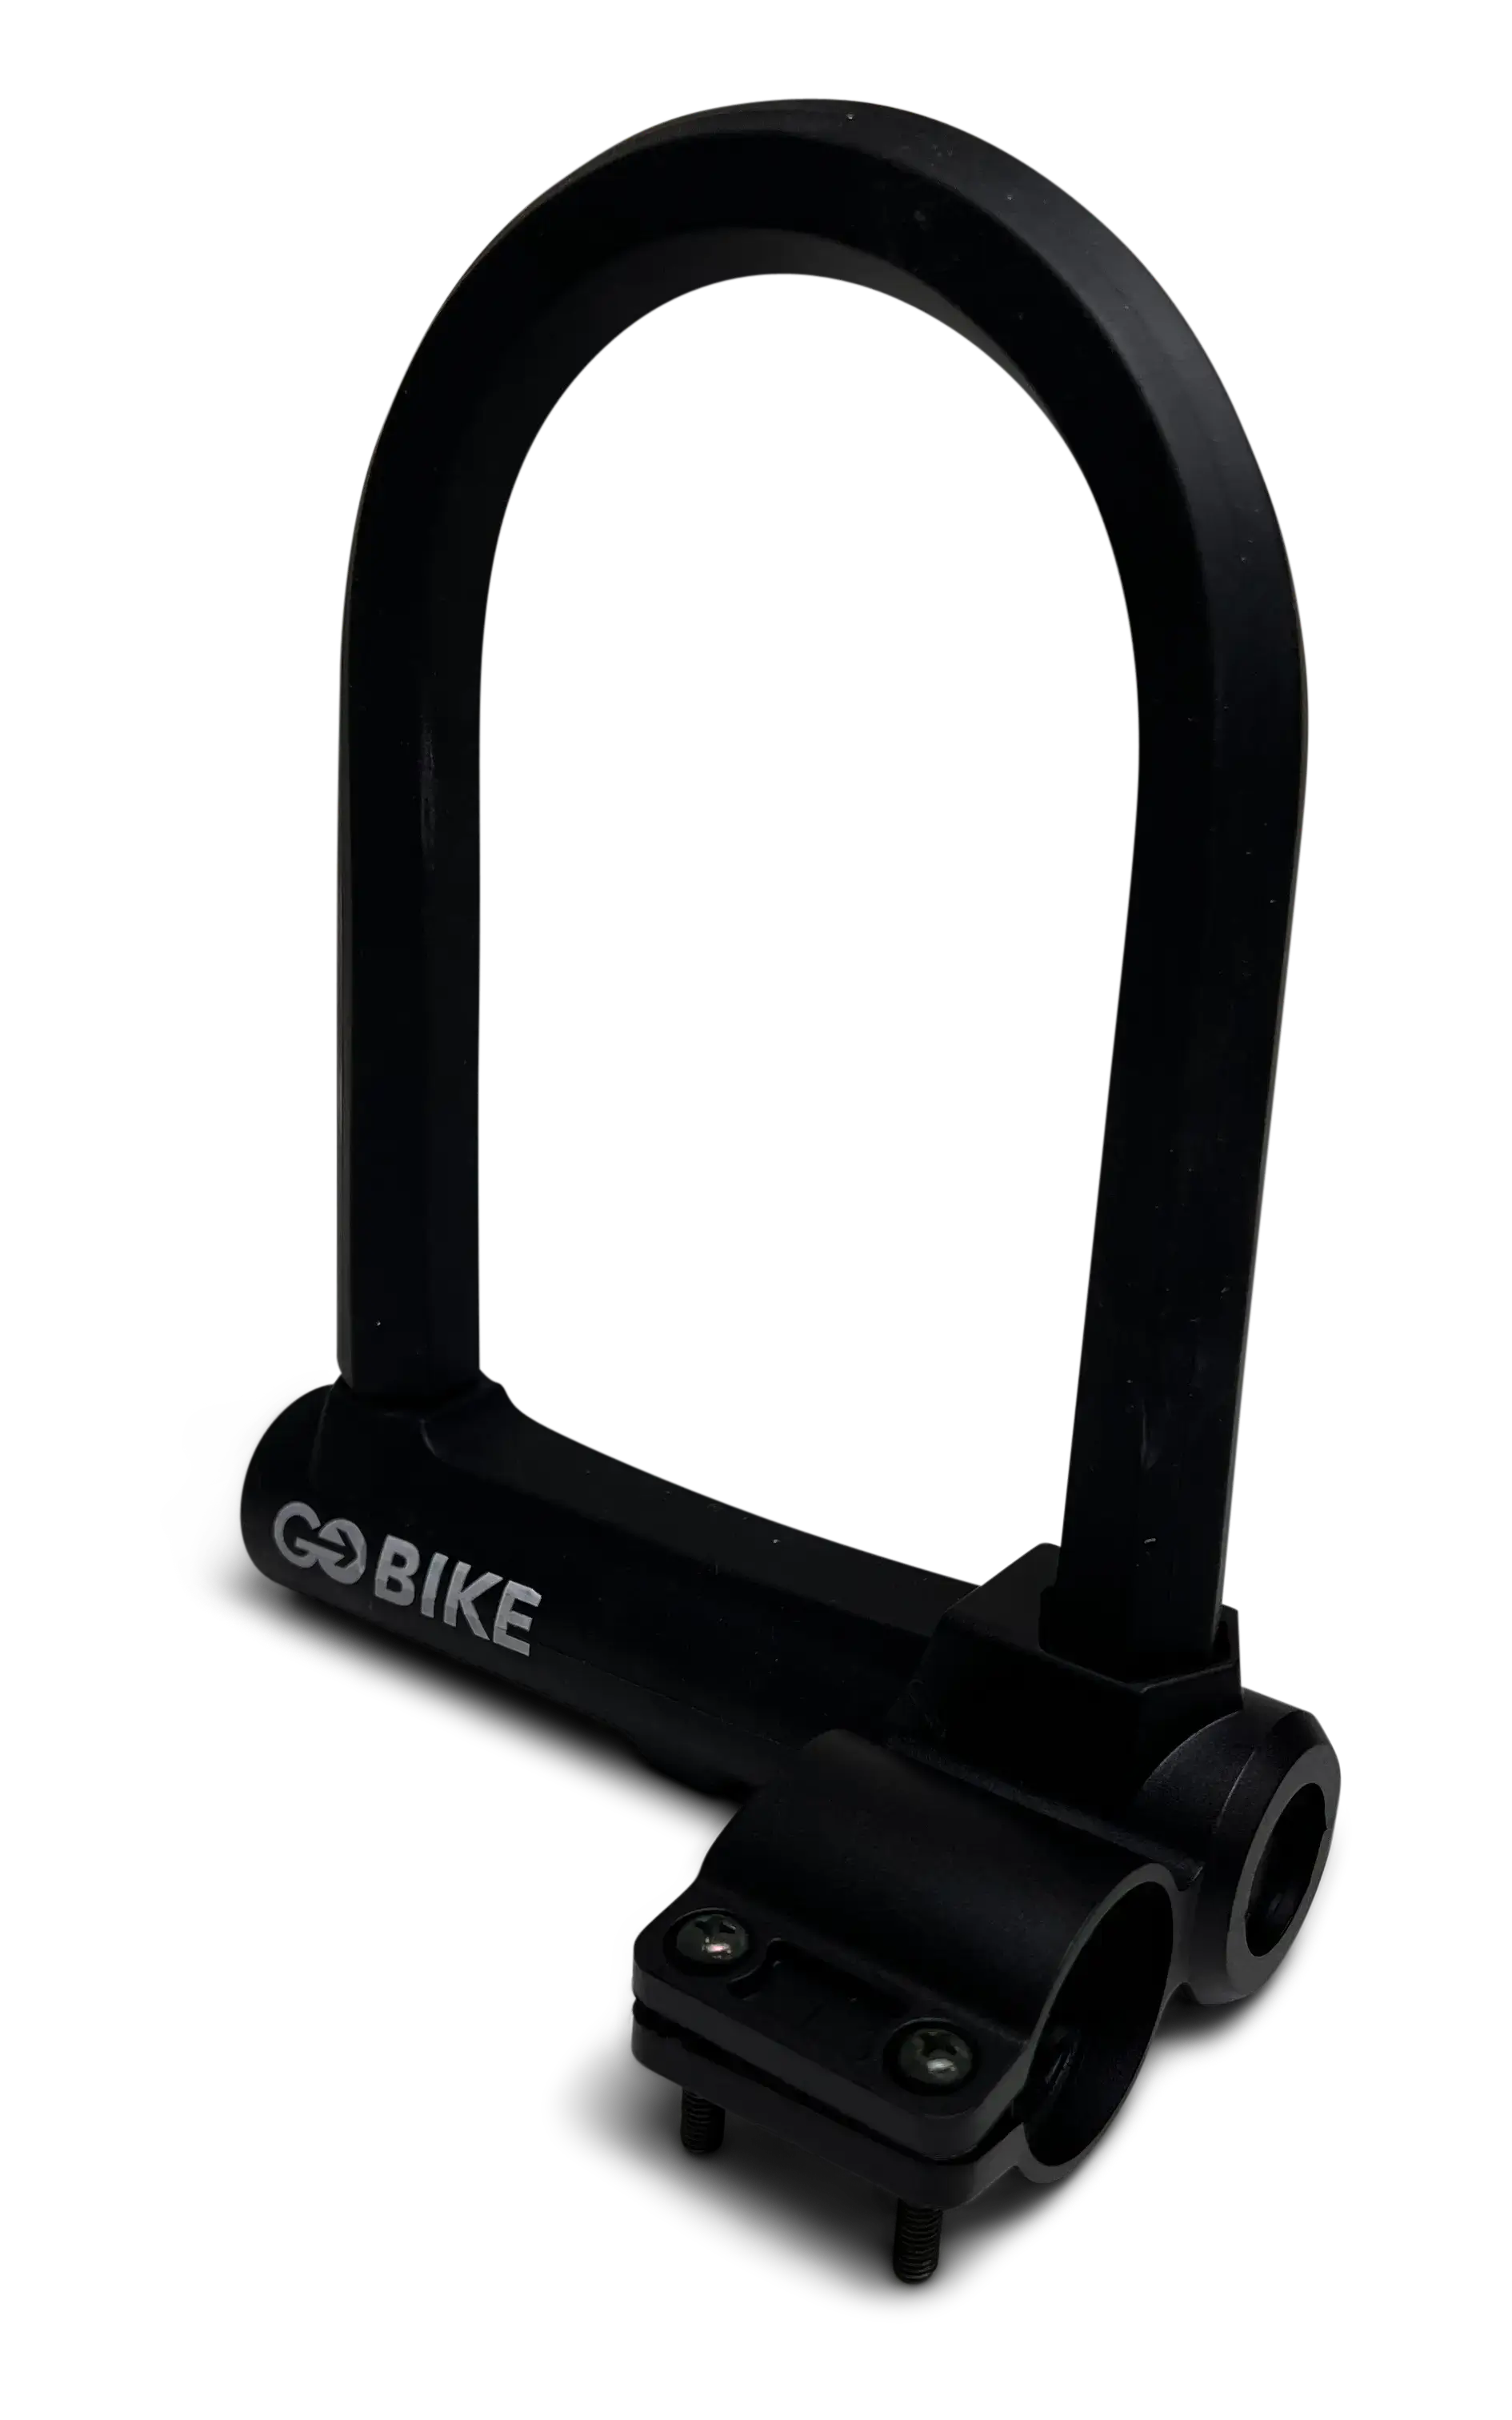 GOBIKE Bike Lock